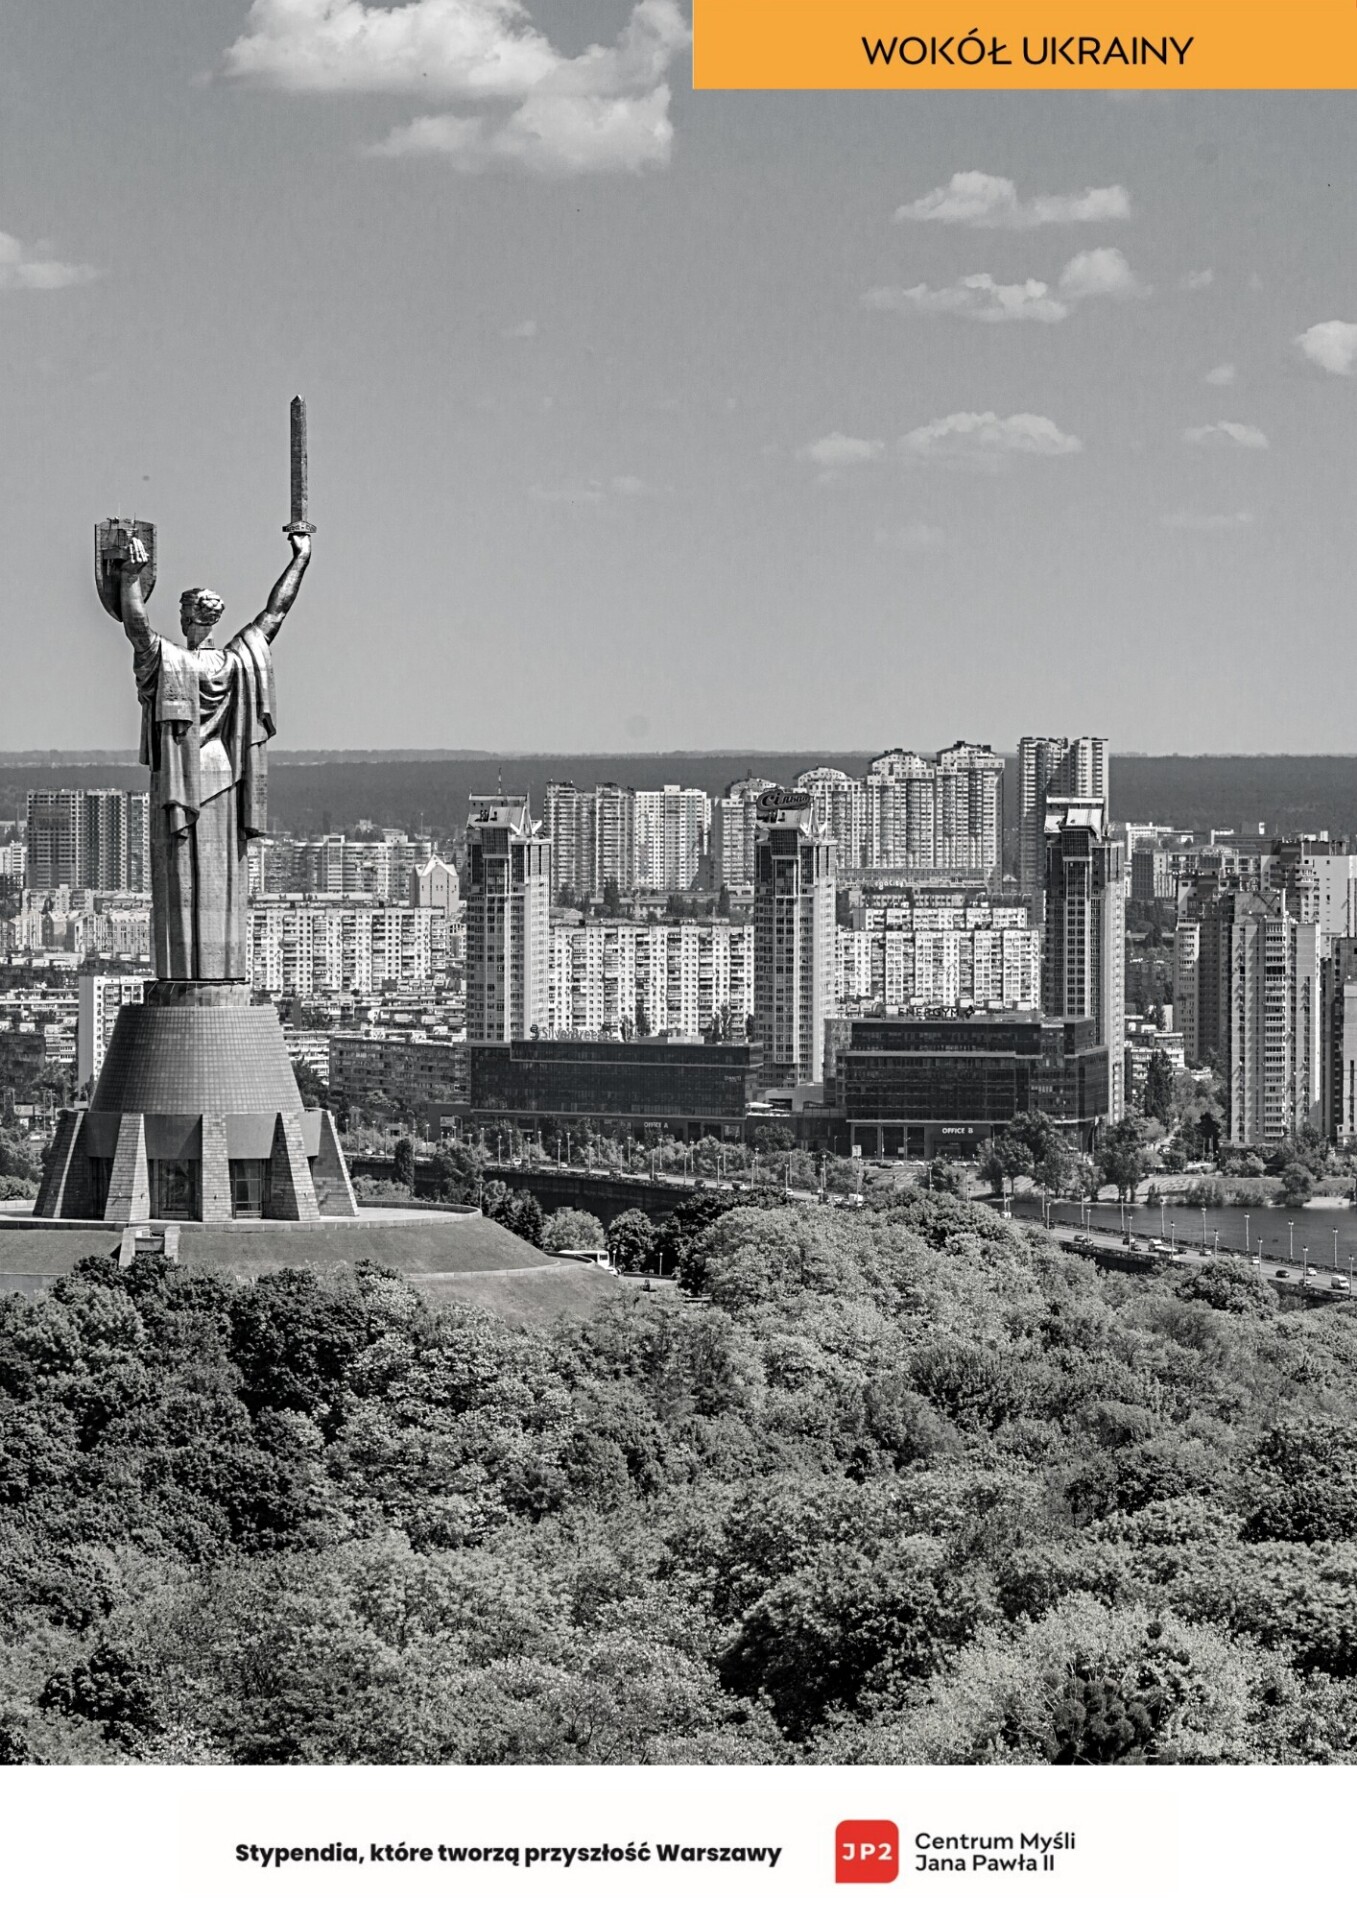 Zdjęcie pomnika Matki Ziemi w Kijowie oraz panoramy miasta.